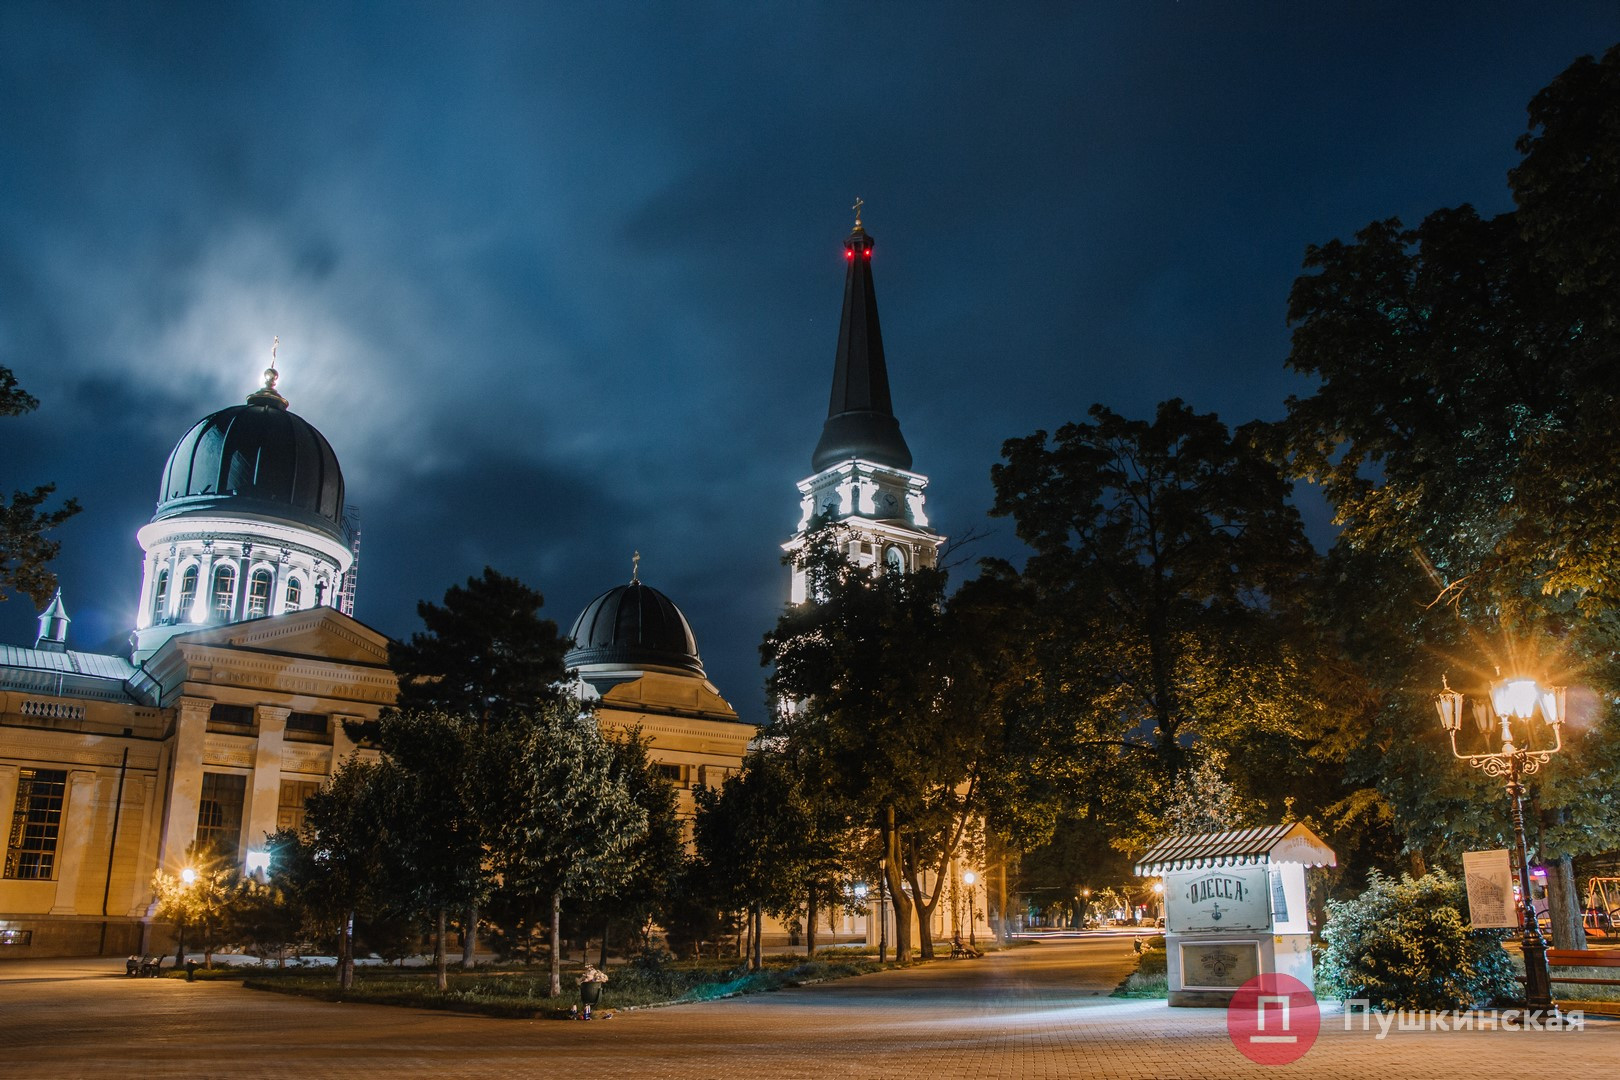 Огонь, вода и небо, небо, небо: лучшие фото Одессы лета 2019. ФОТО